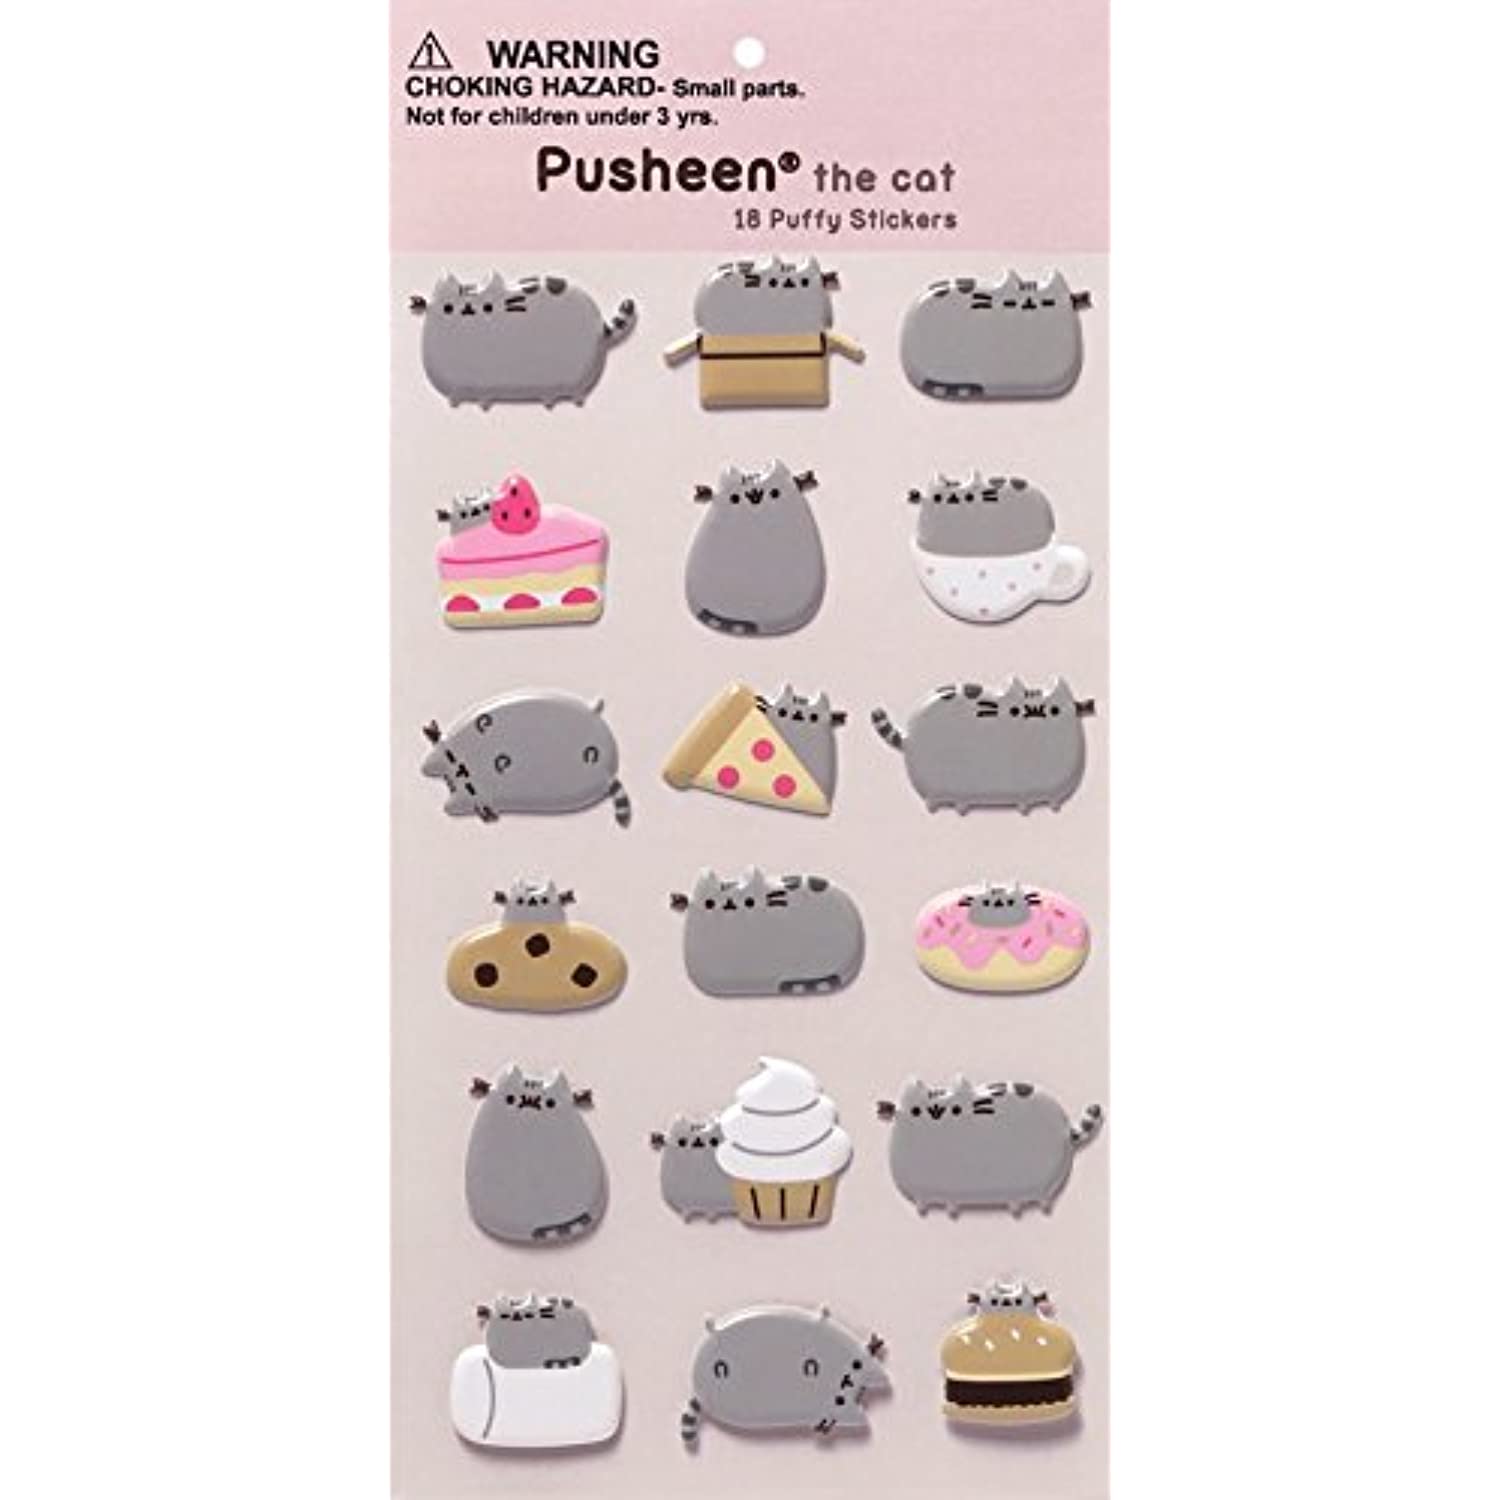 GUND Pusheen Ice Cream Sundae Snackable 12" Stuffed Toy Plush with Puffy Pusheen Sticker Pack